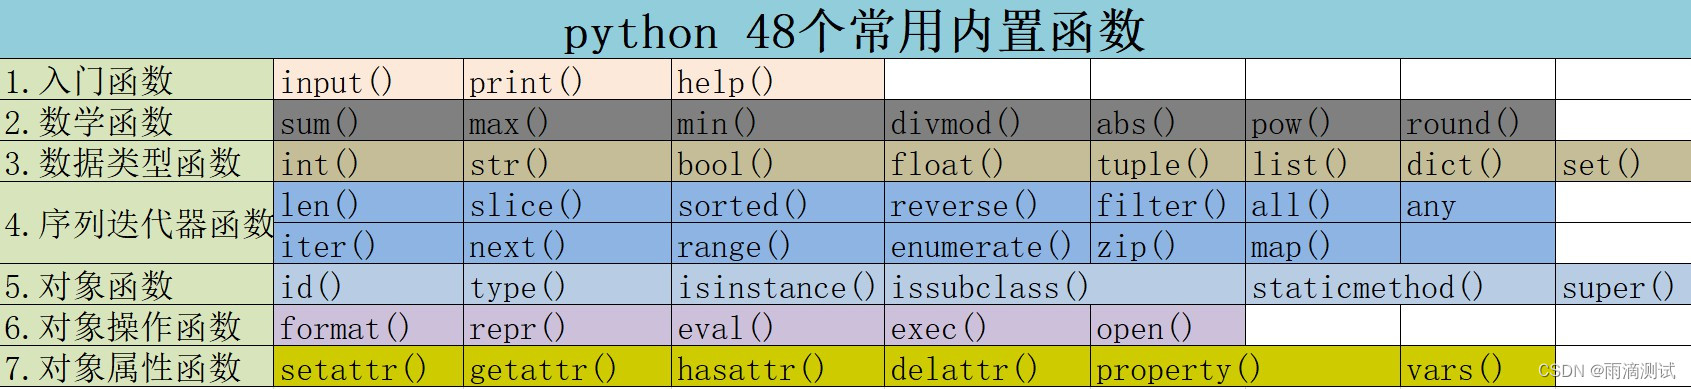 python内置函数有哪些？整理到了7大分类48个函数，都是工作中常用的函数